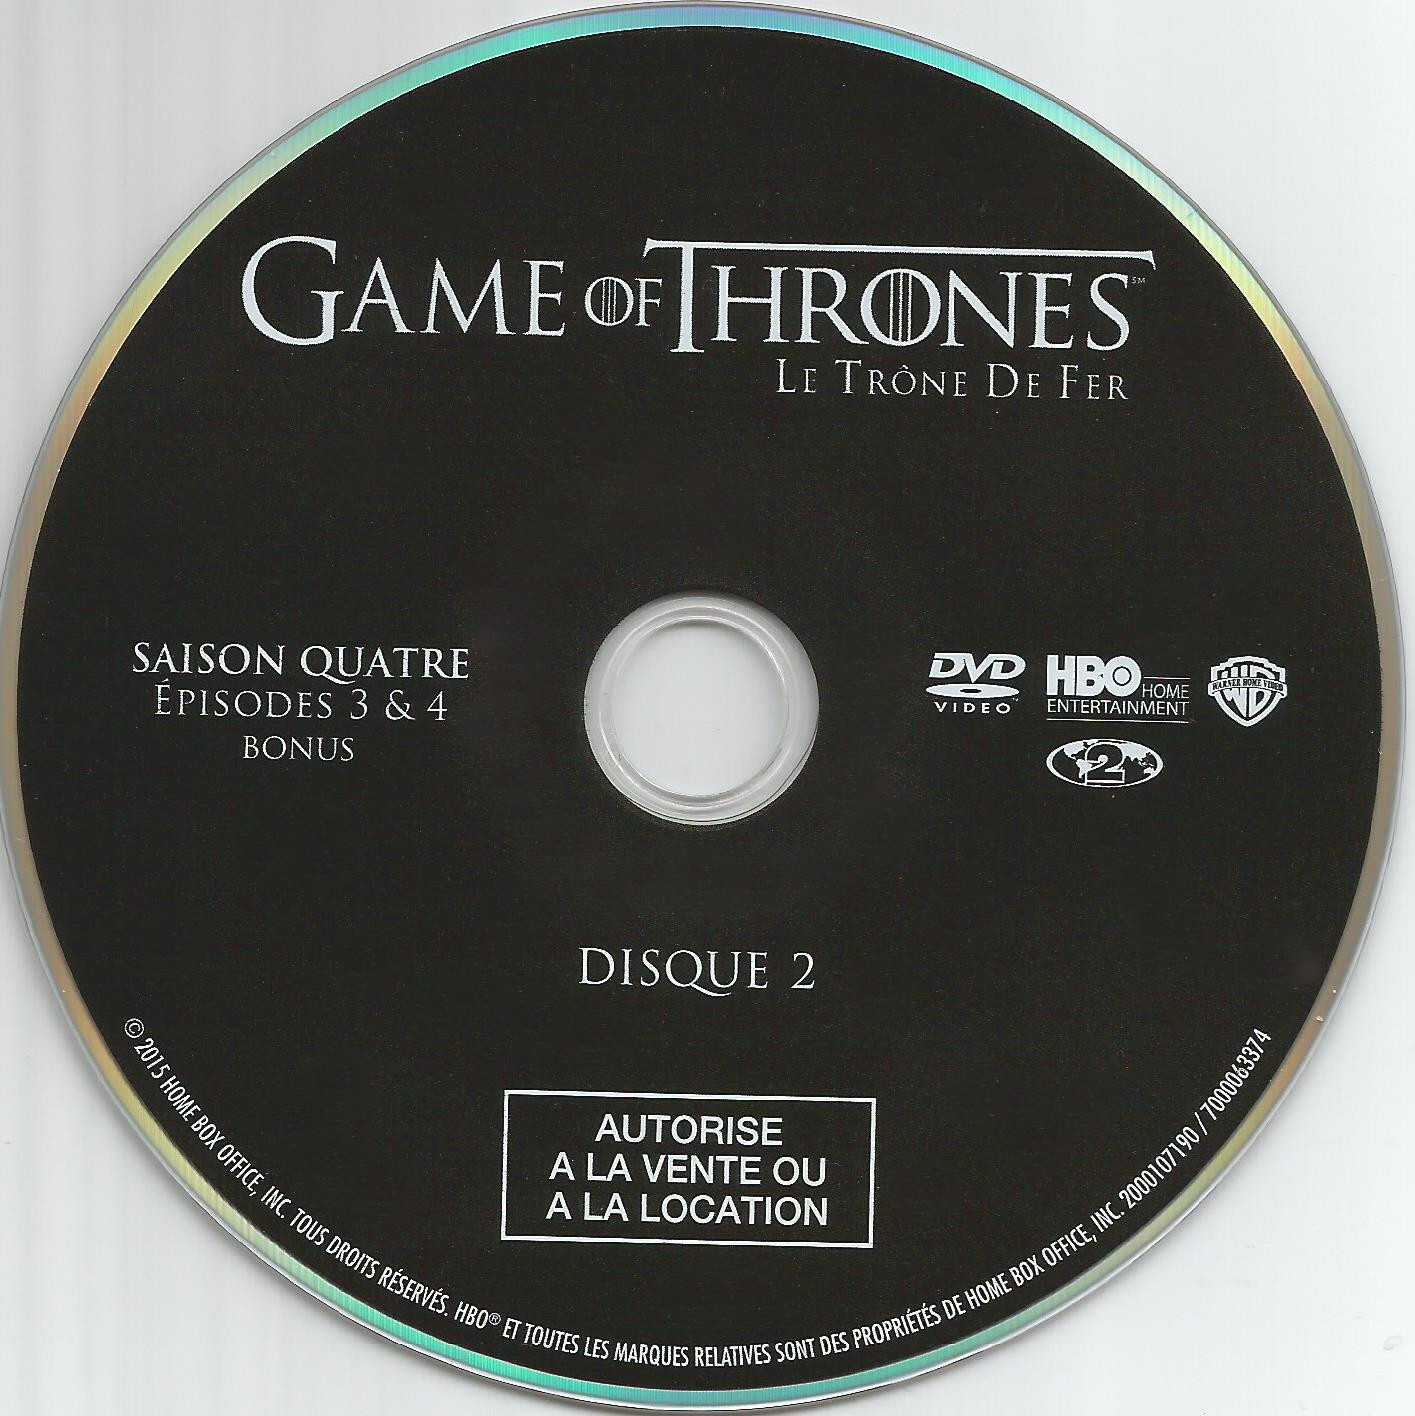 Game of thrones (le trone de fer) Saison 4 DVD 2